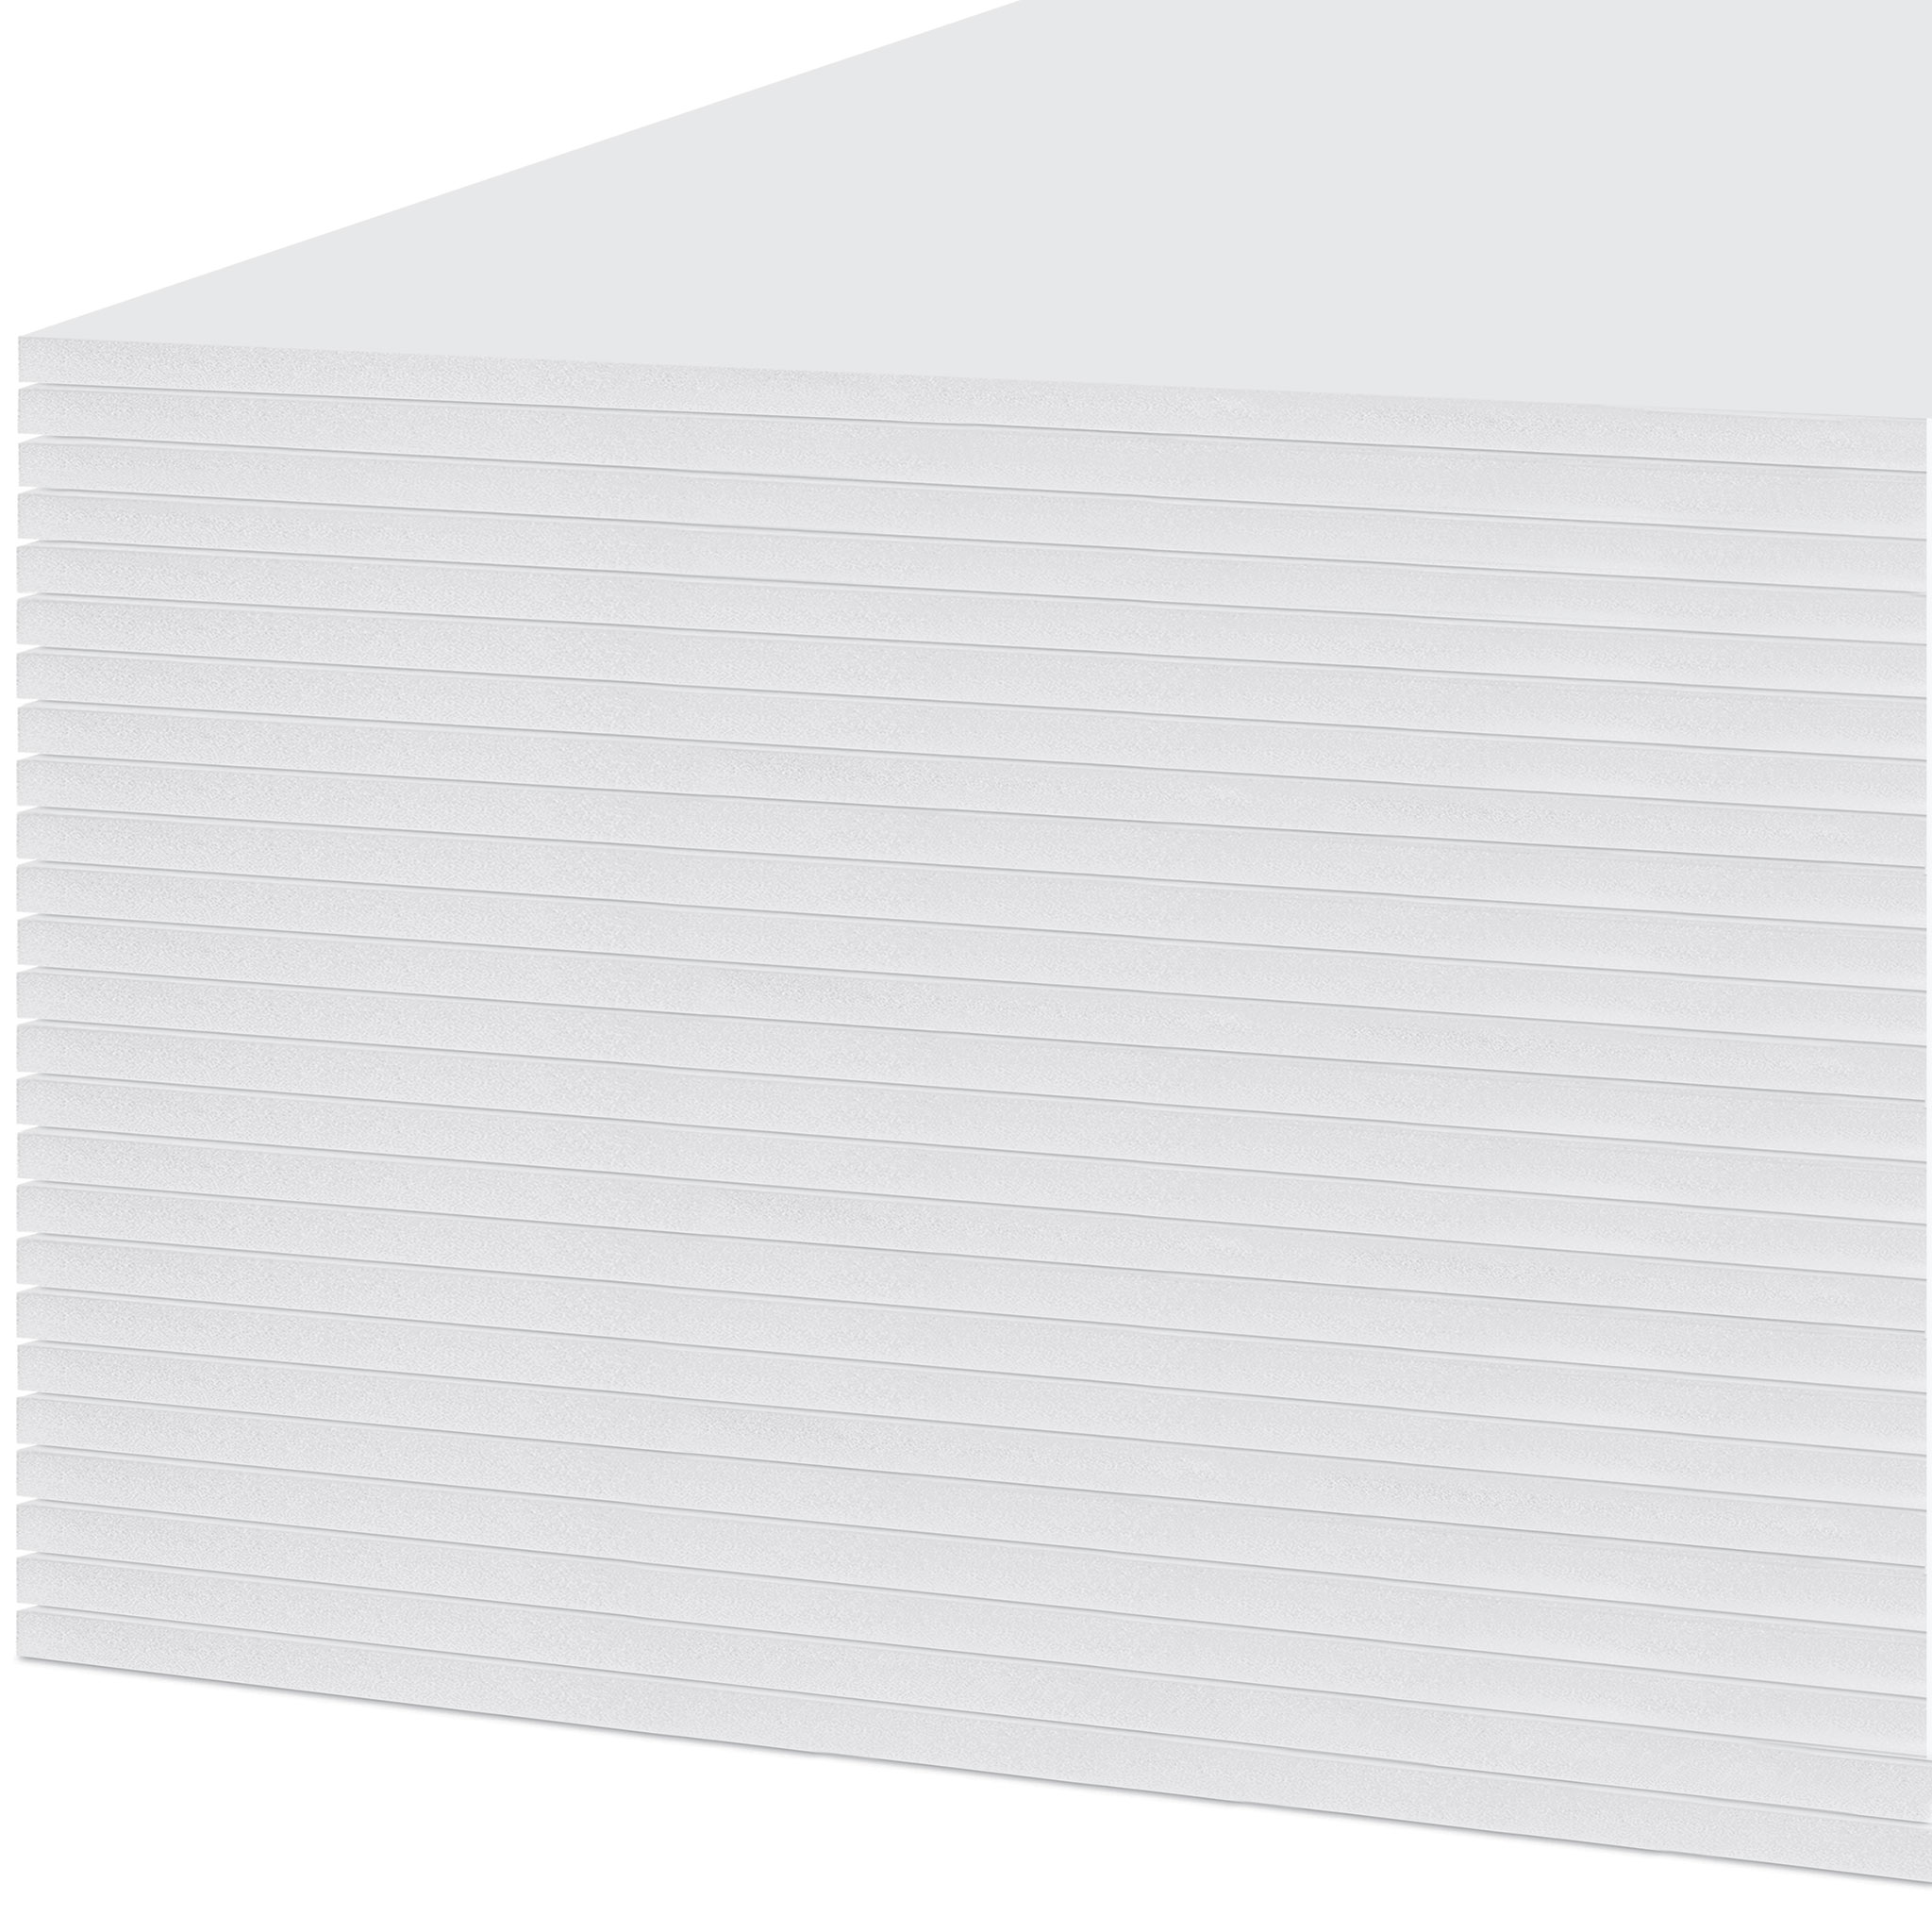 White Foam Board - 48 x 96 x 3/16, Pkg of 25